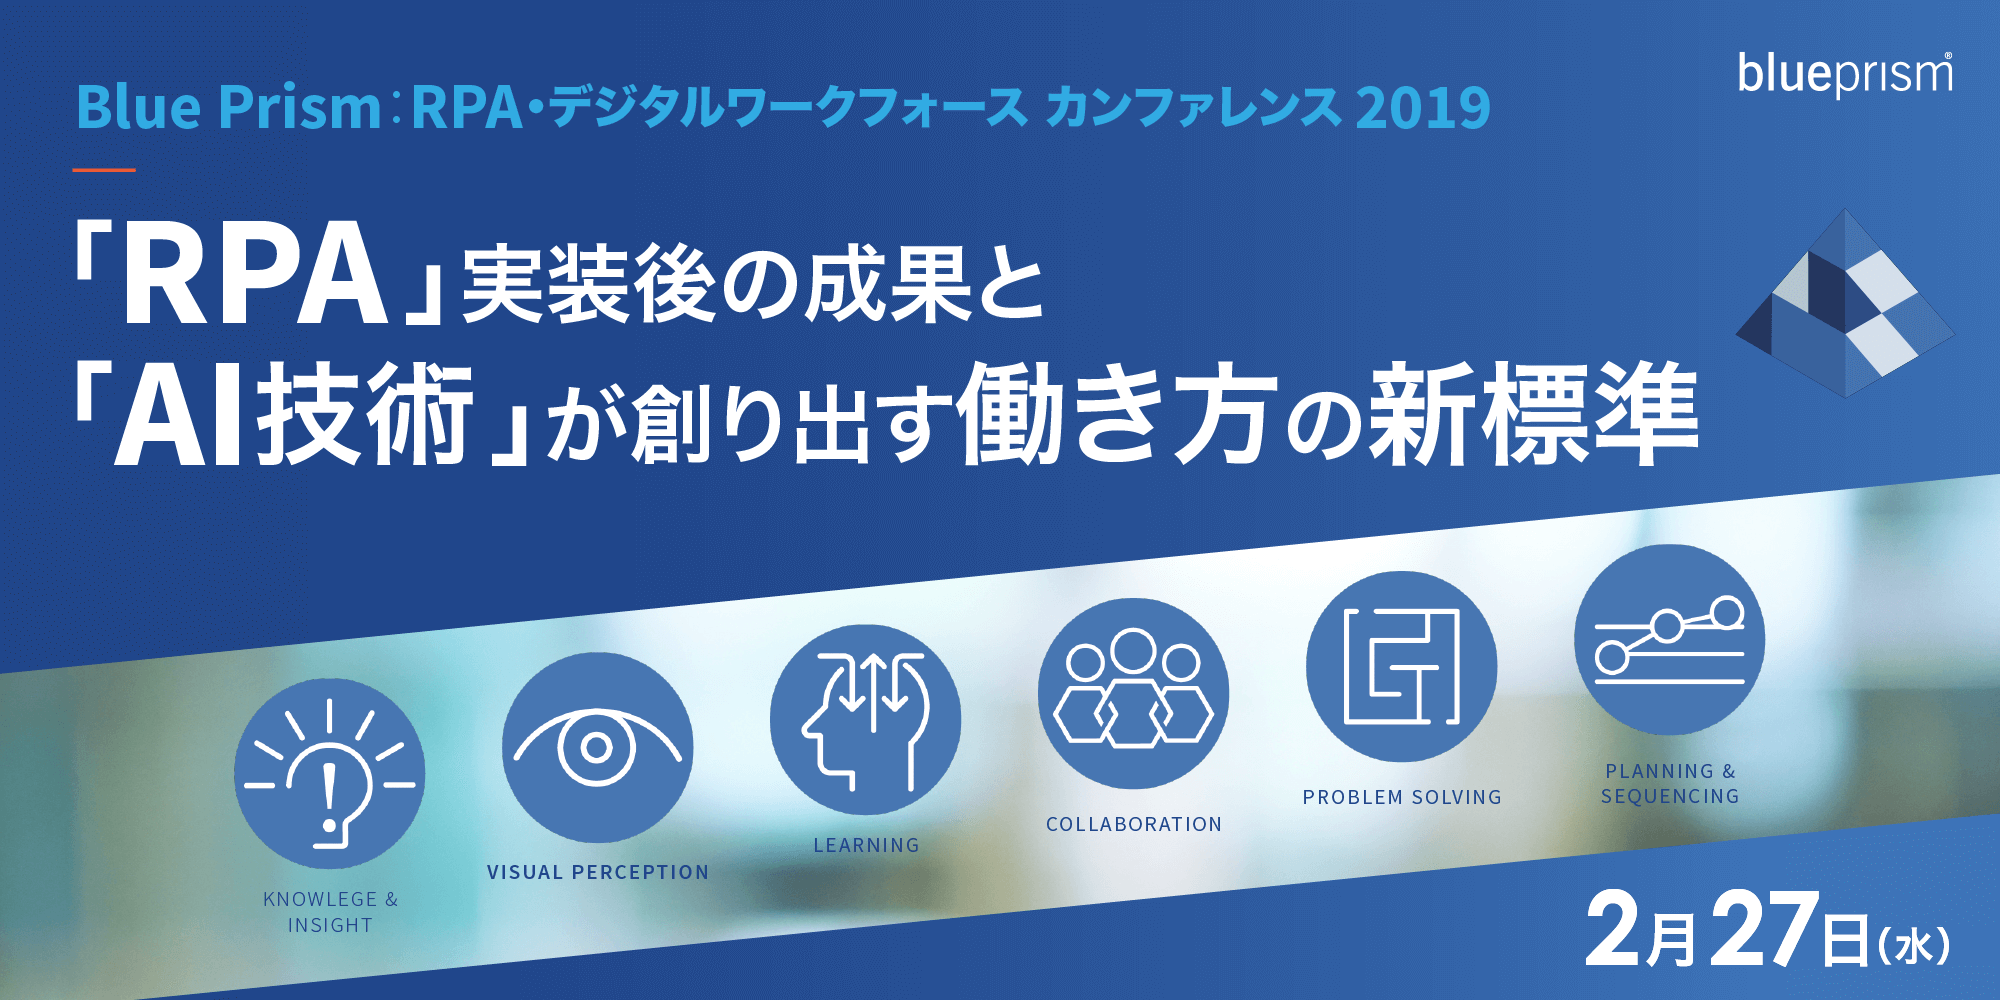 Blue Prism： RPA・デジタルワークフォースカンファレンス 2019